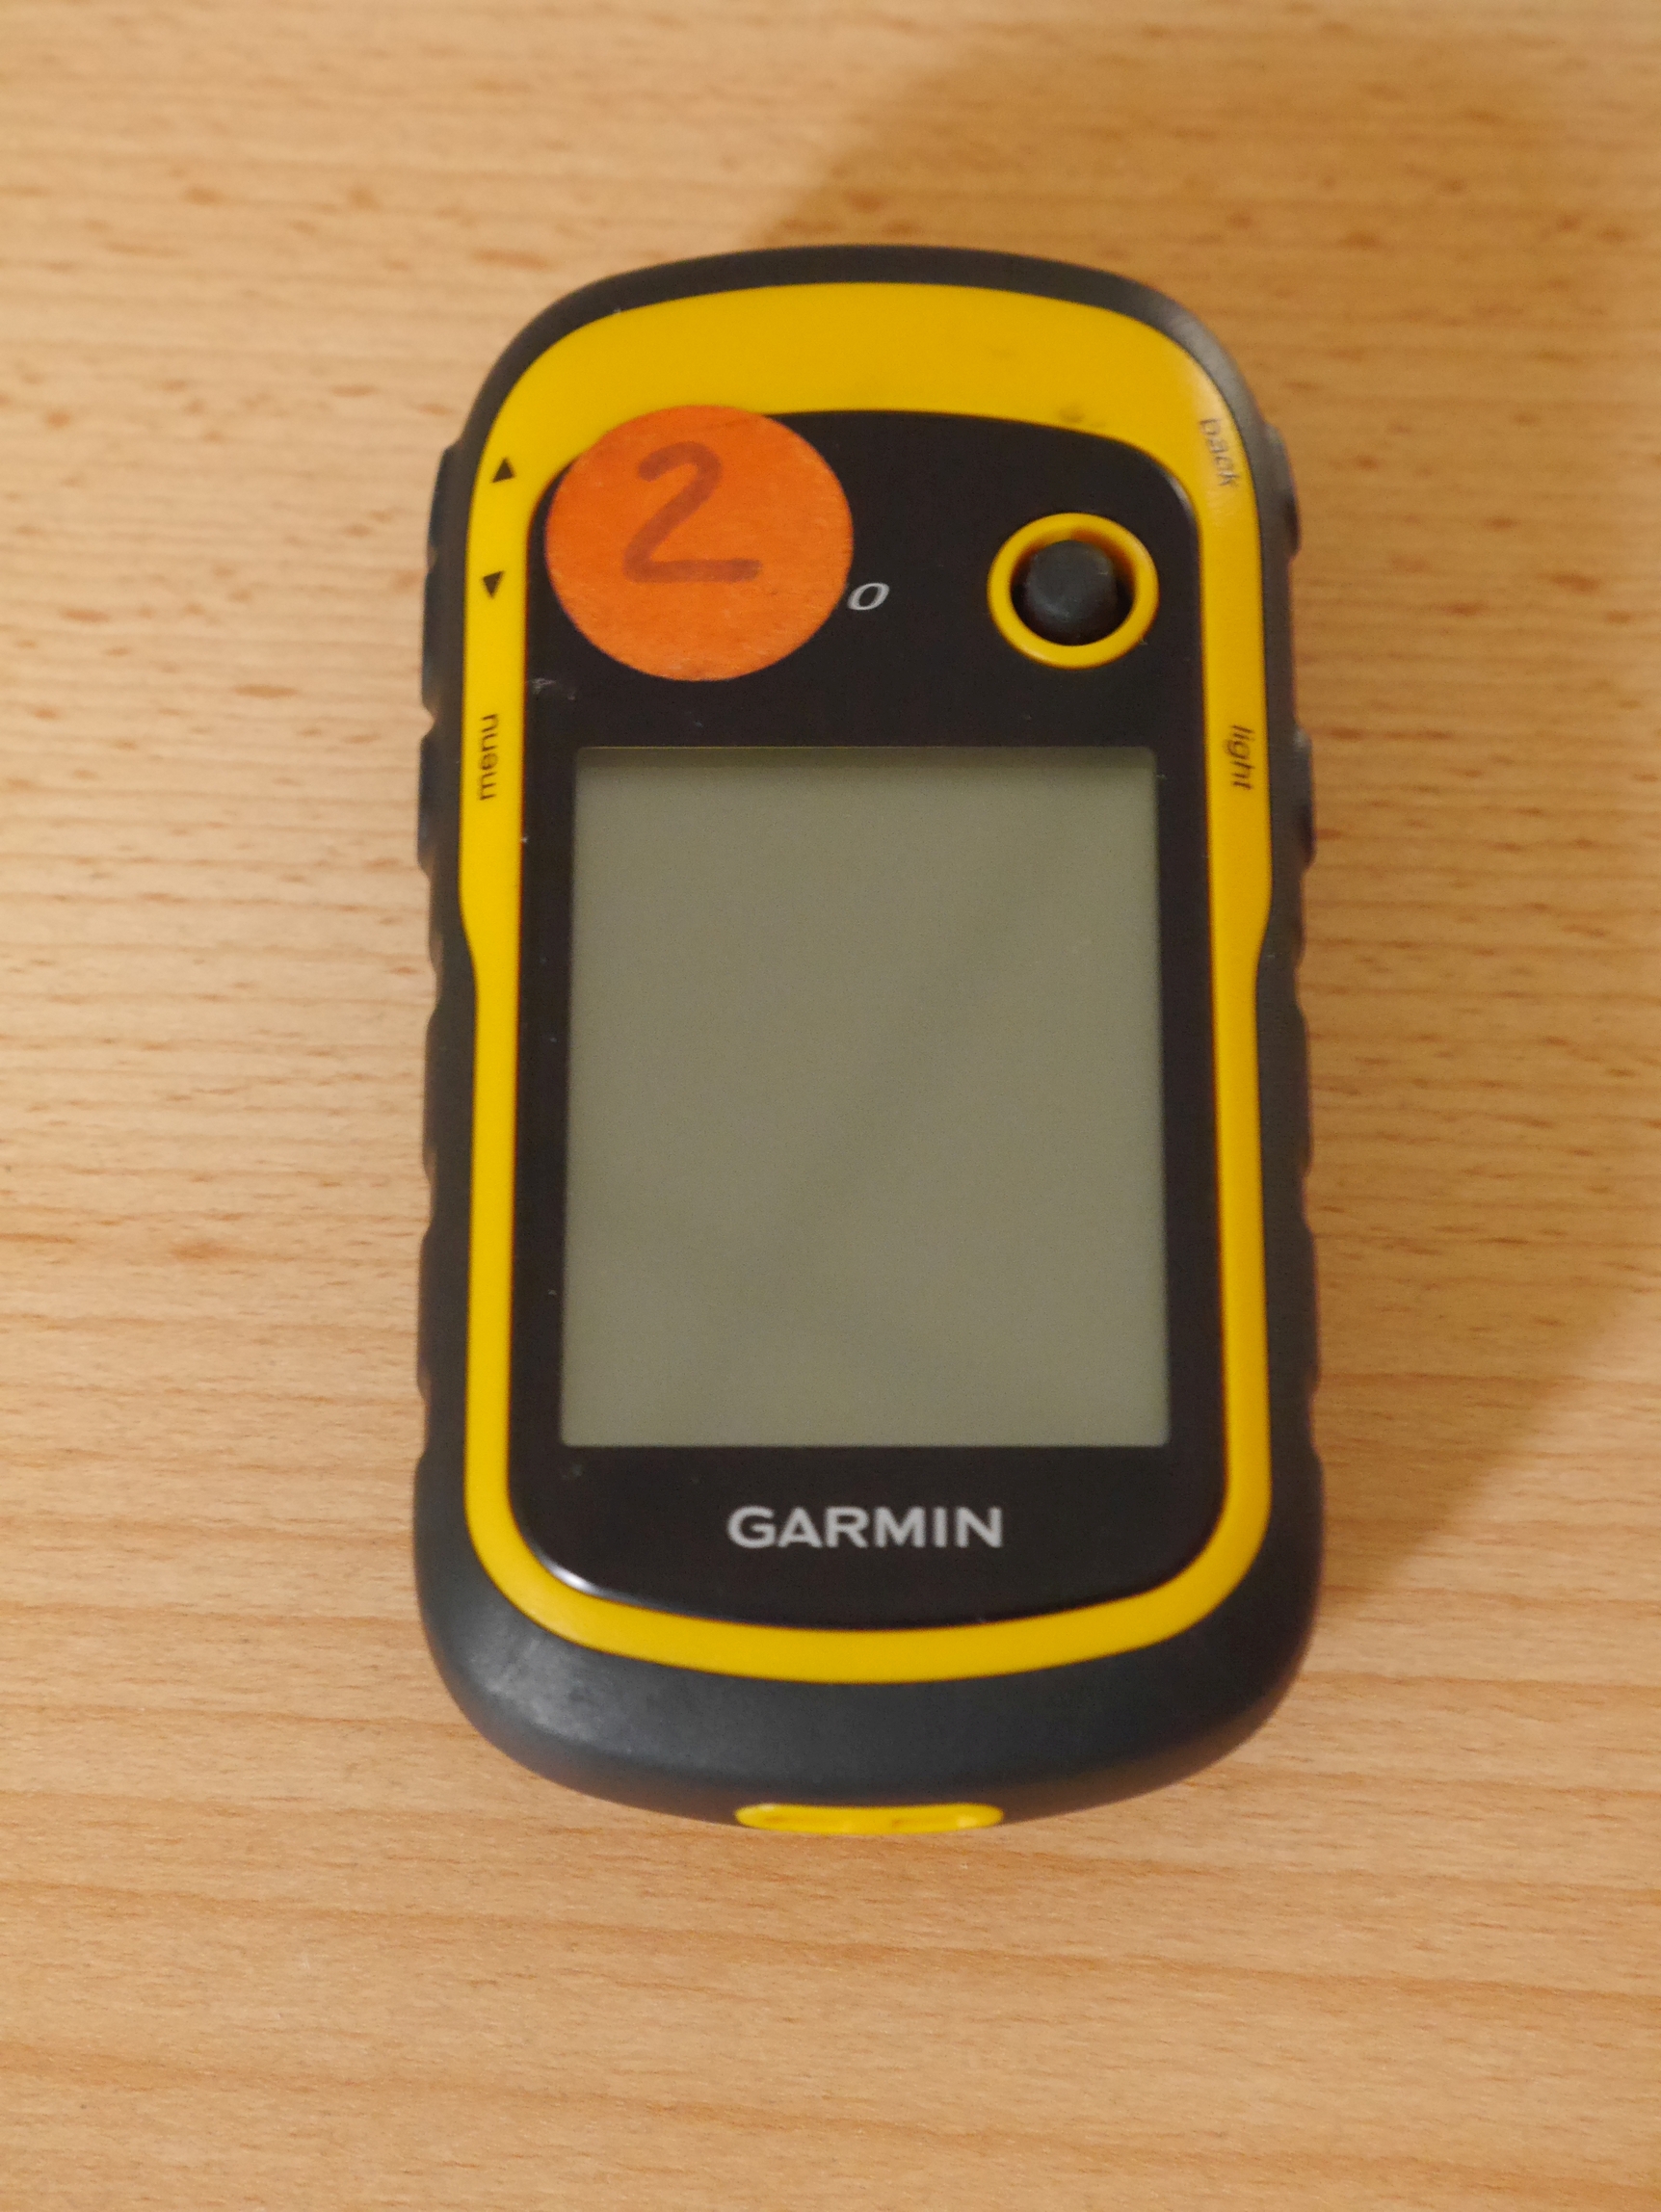 Bild 2 GPS-Geräte